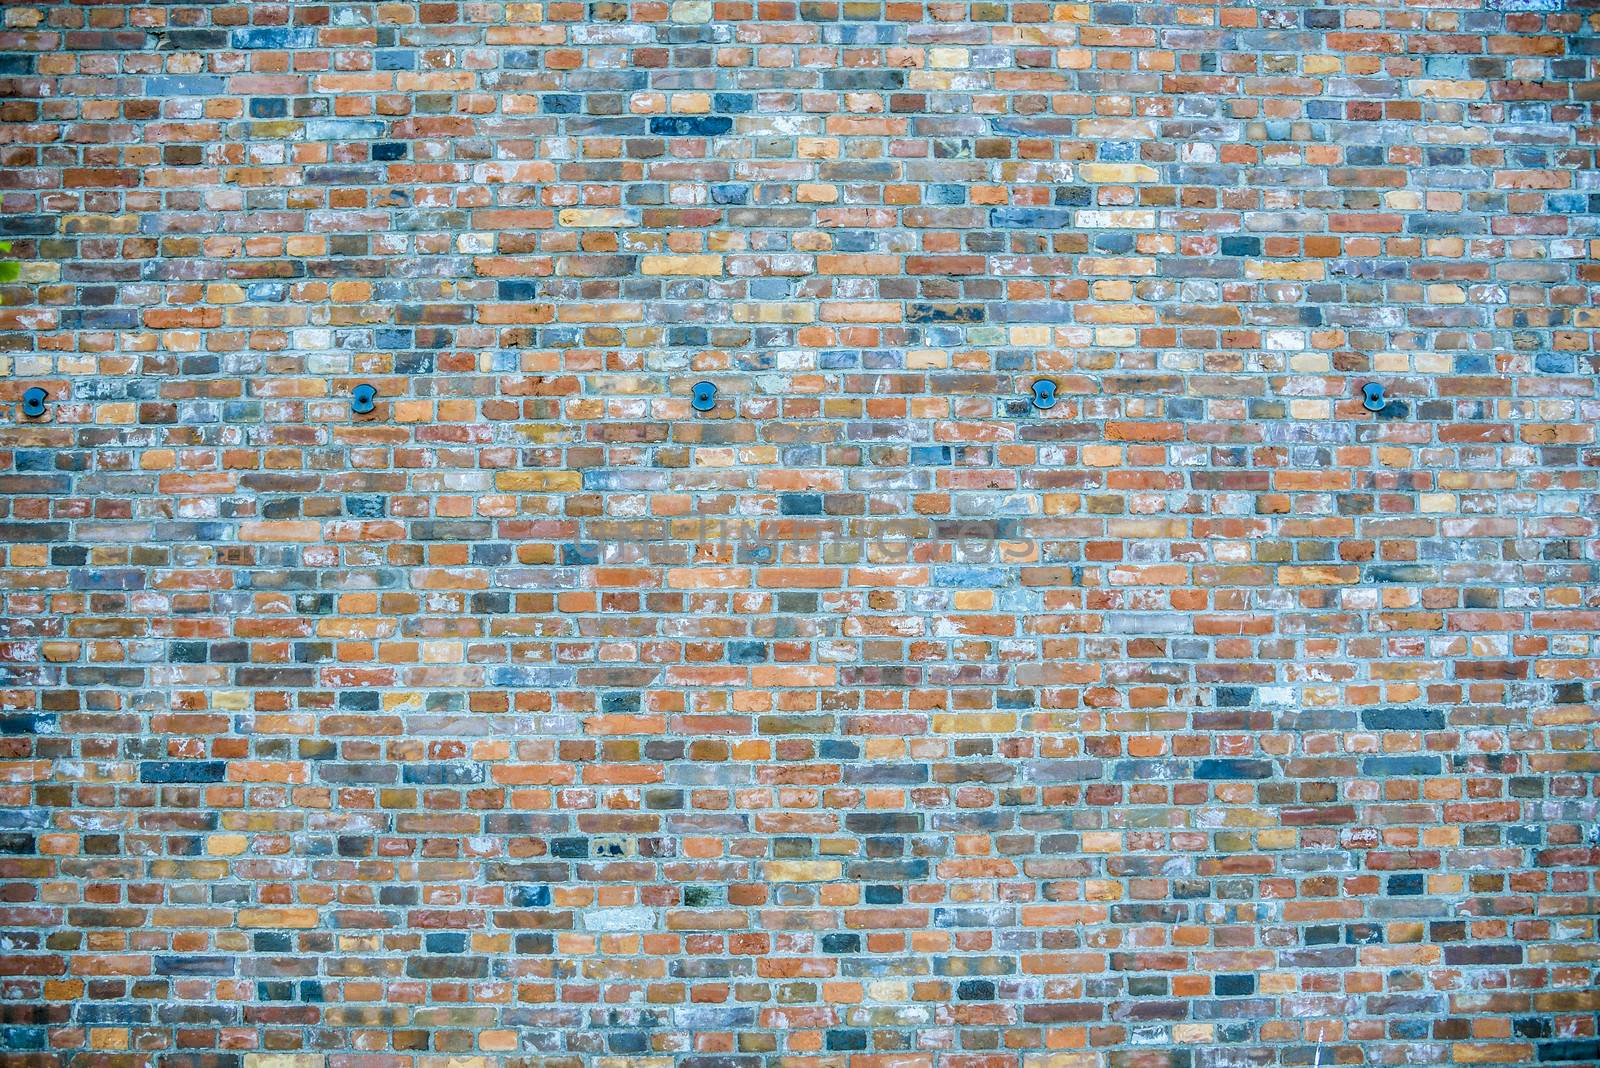 Brick wall pattern2